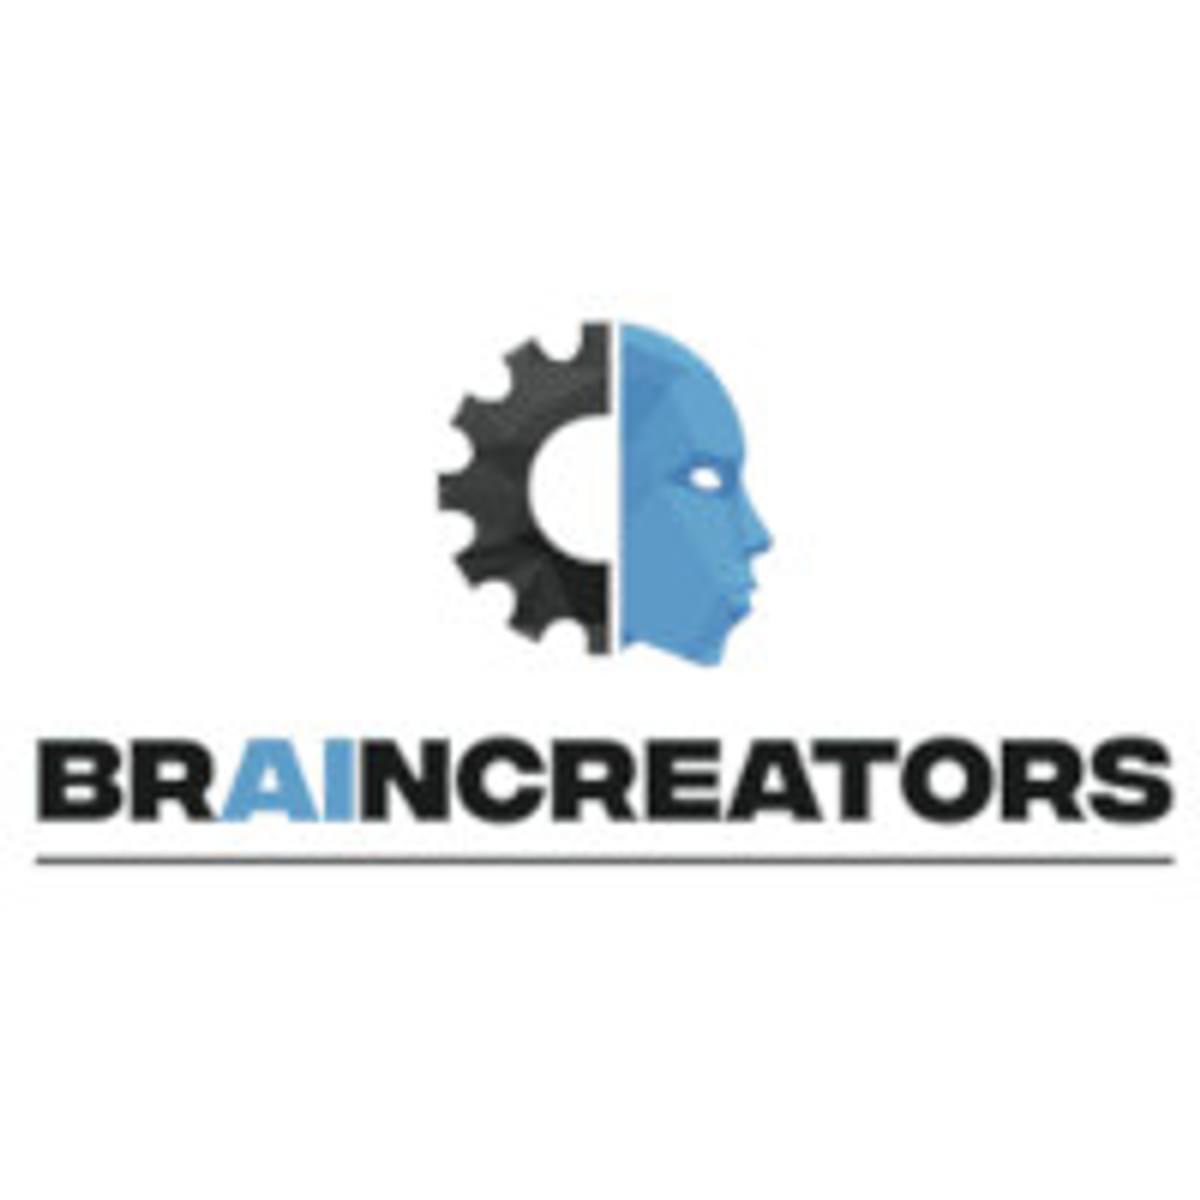 BrainCreators stelt zeven nieuwe medewerkers aan image